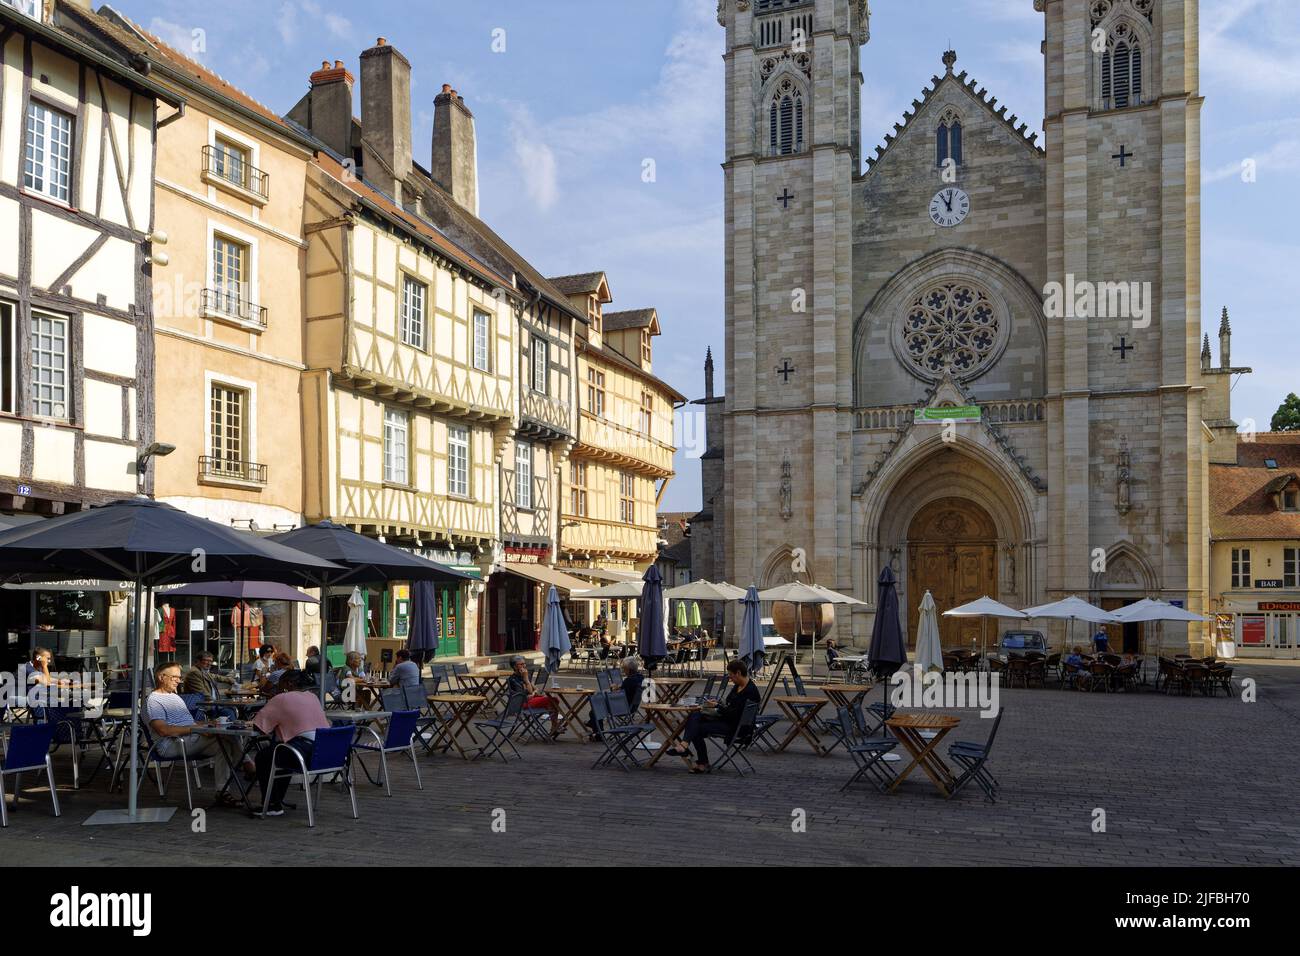 France, Saône et Loire, Chalon sur Saône, place Saint-Vincent maisons à colombages et terrasses de cafés en face de la cathédrale Saint-Vincent Banque D'Images